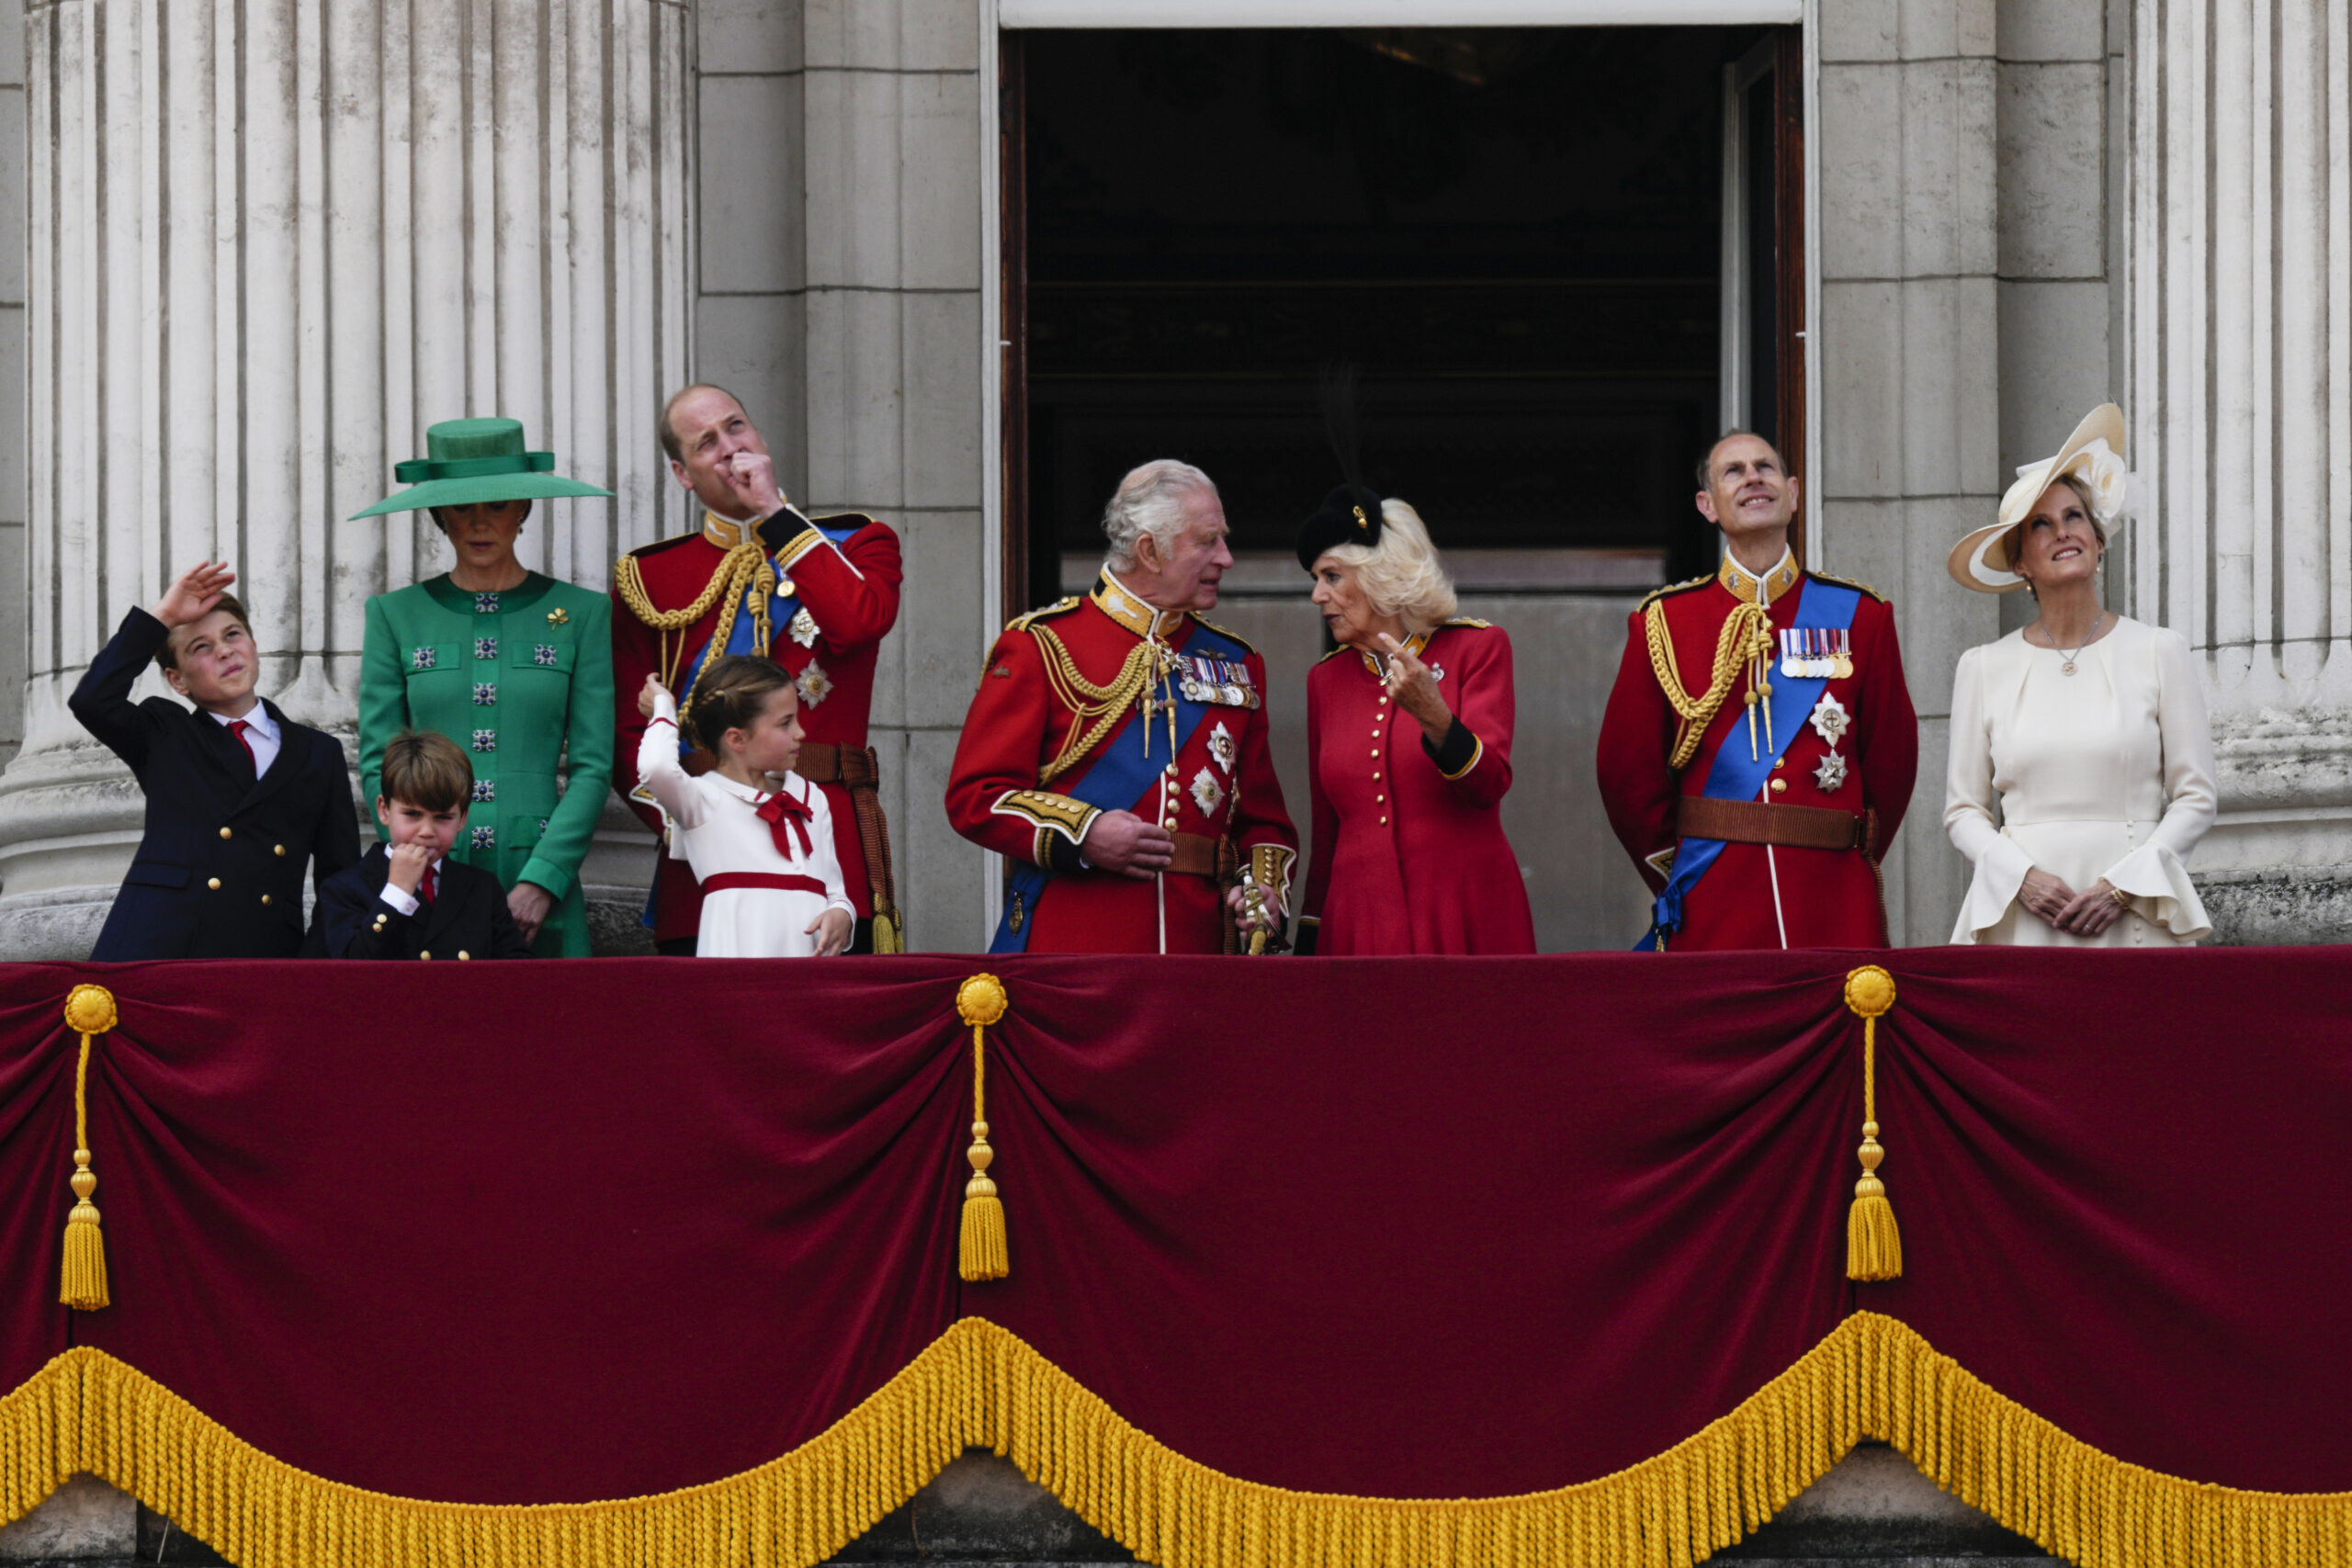 Ο «καβαλάρης» Κάρολος, οι απίστευτες γκριμάτσες του Λούις και το πλήθος Βρετανών τουριστών στα 78α γενέθλια του βασιλιά